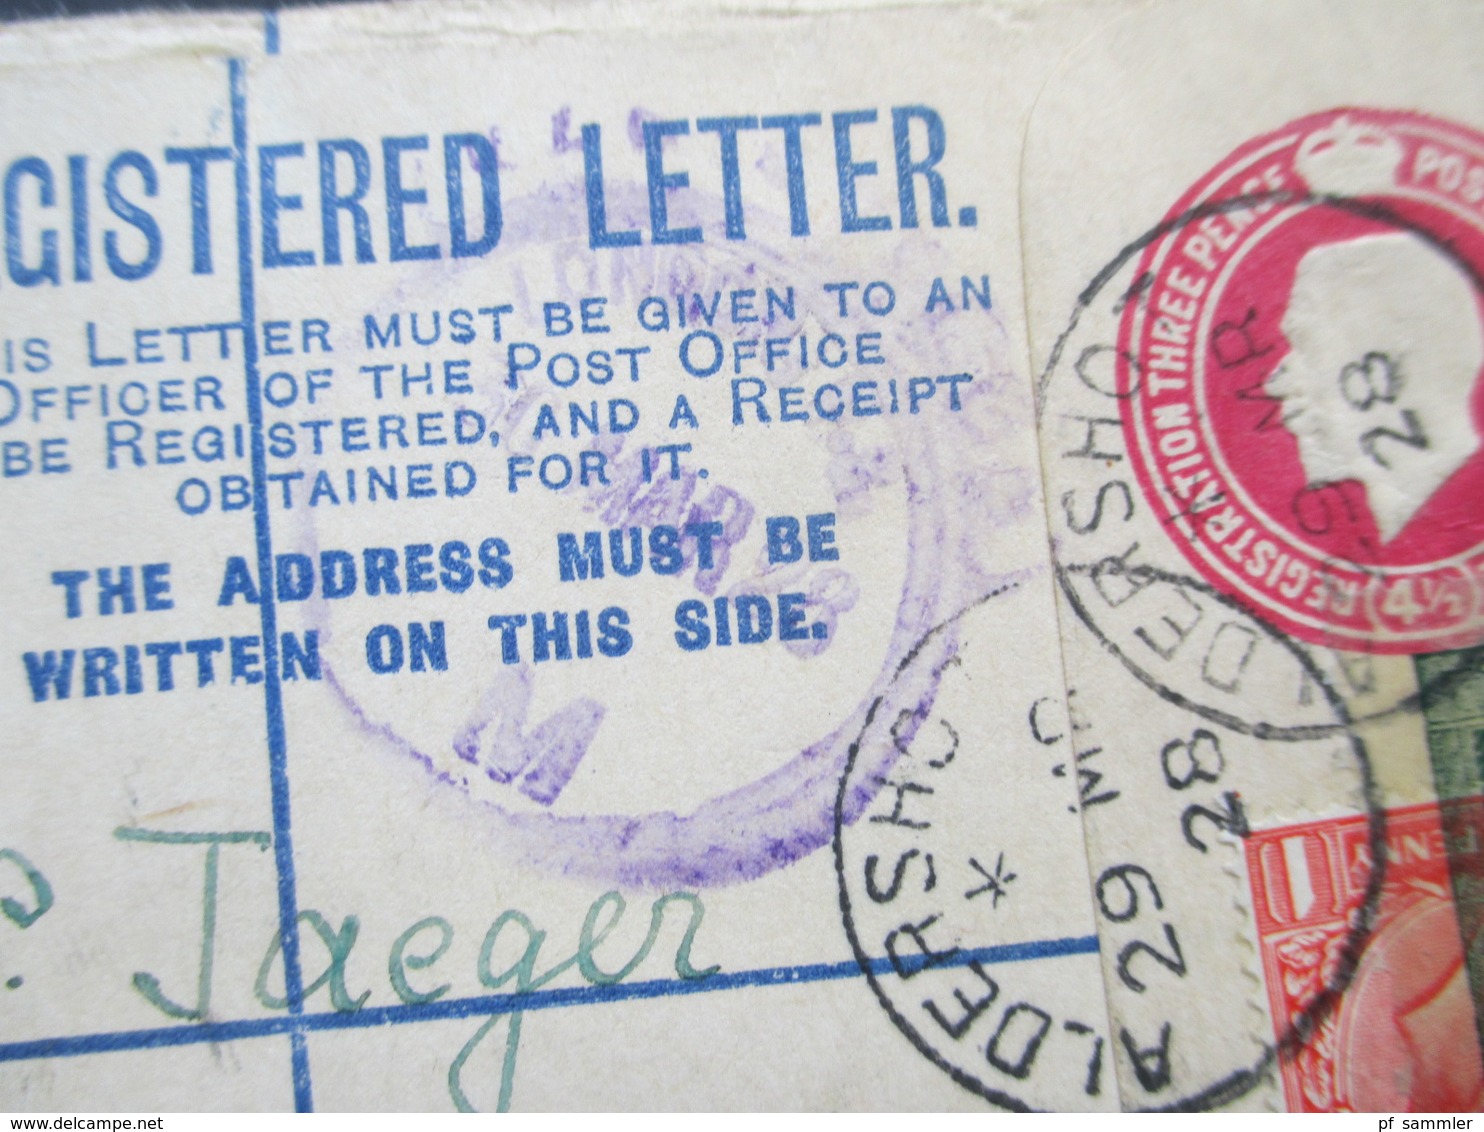 GB 1928 Registered Letter Aldershot No. 932 Nach Wien. Zusatzfrankatur Mit Vignette überklebt Kinderhilswerk Grado - Lettres & Documents